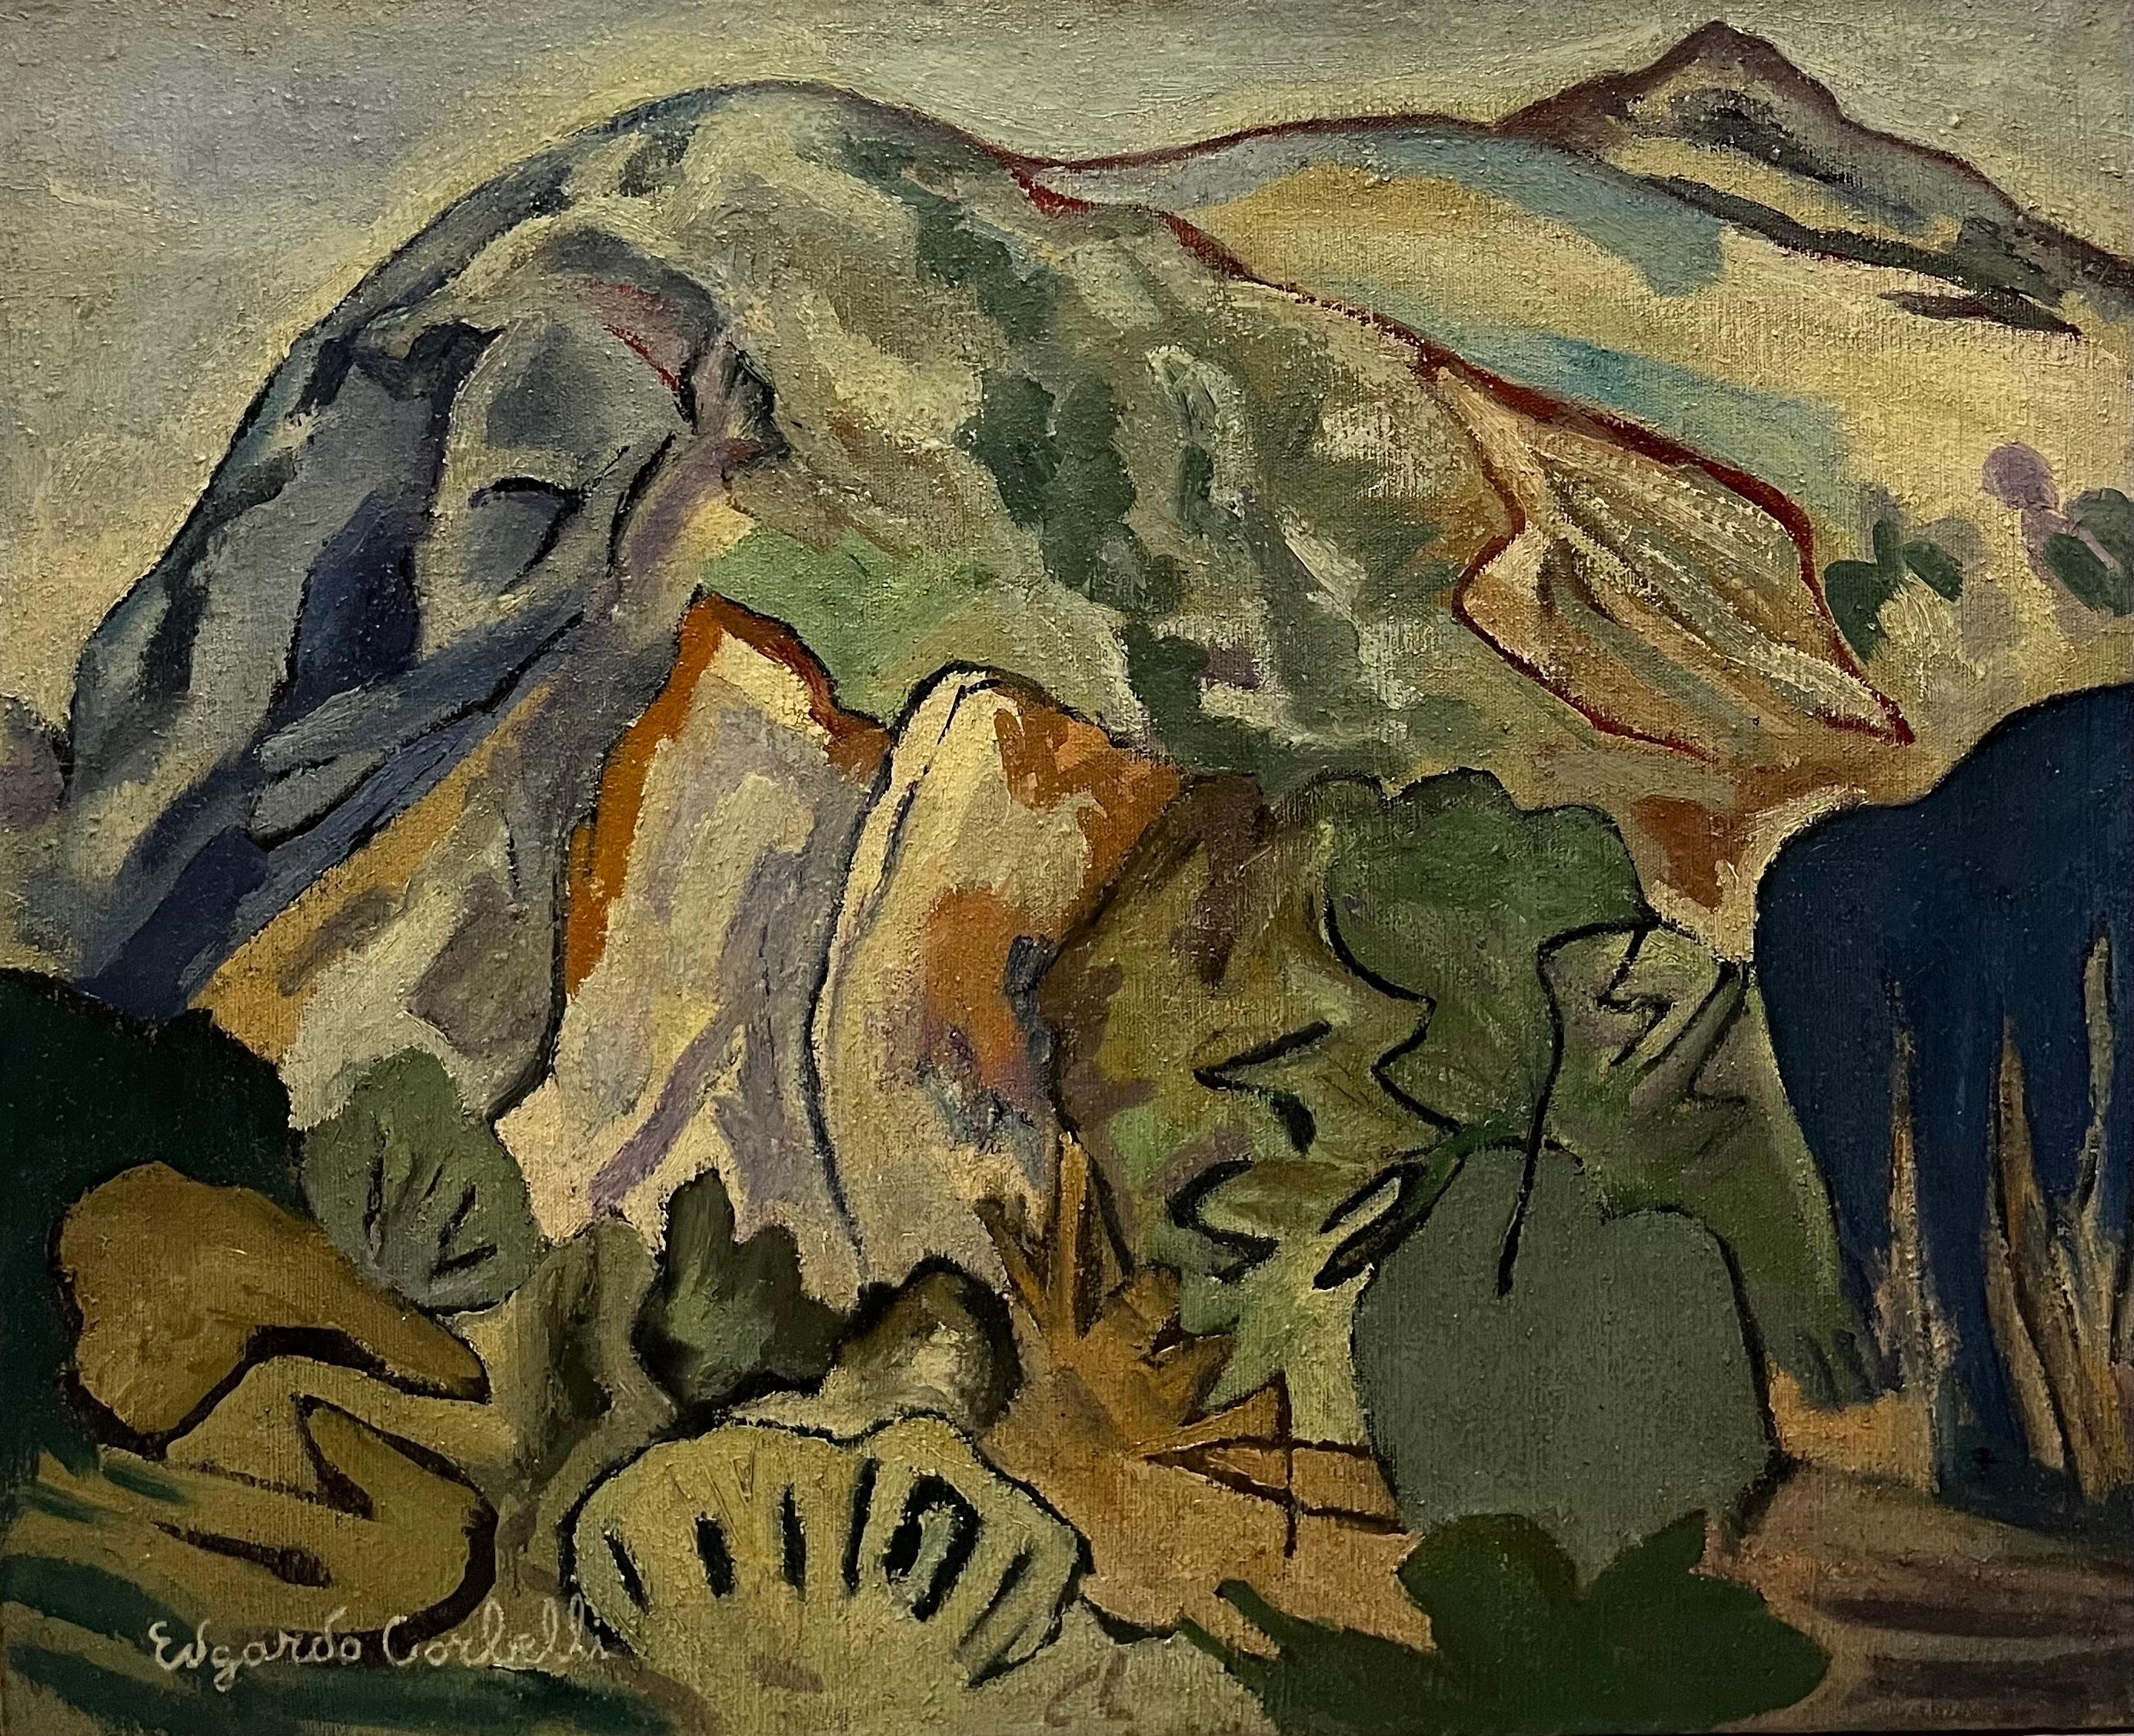 Landscape Painting Edgardo Corbelli - Peinture à l'huile « paysage vert », 81 x 66 cm